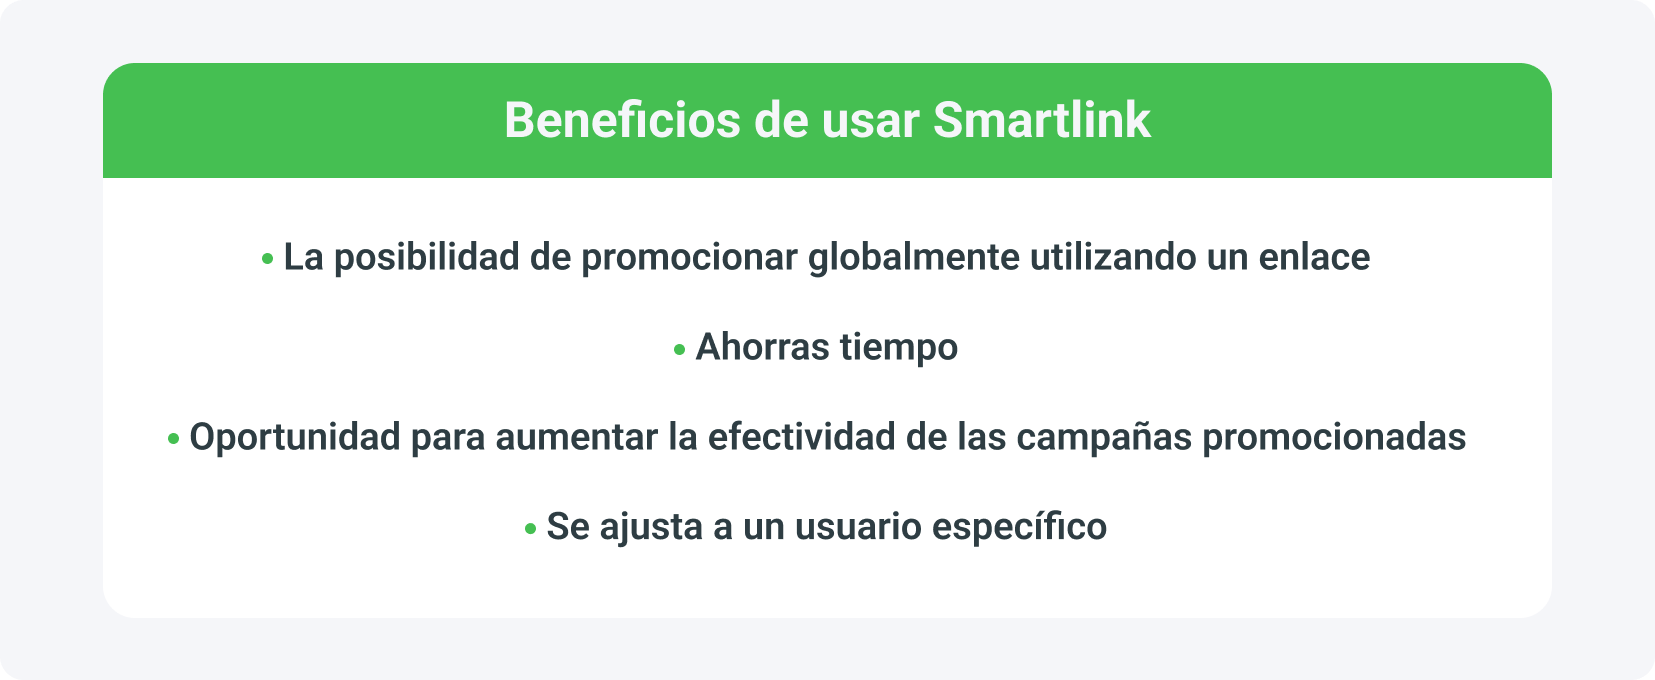 Smartlink- ¿Qué beneficios trae?